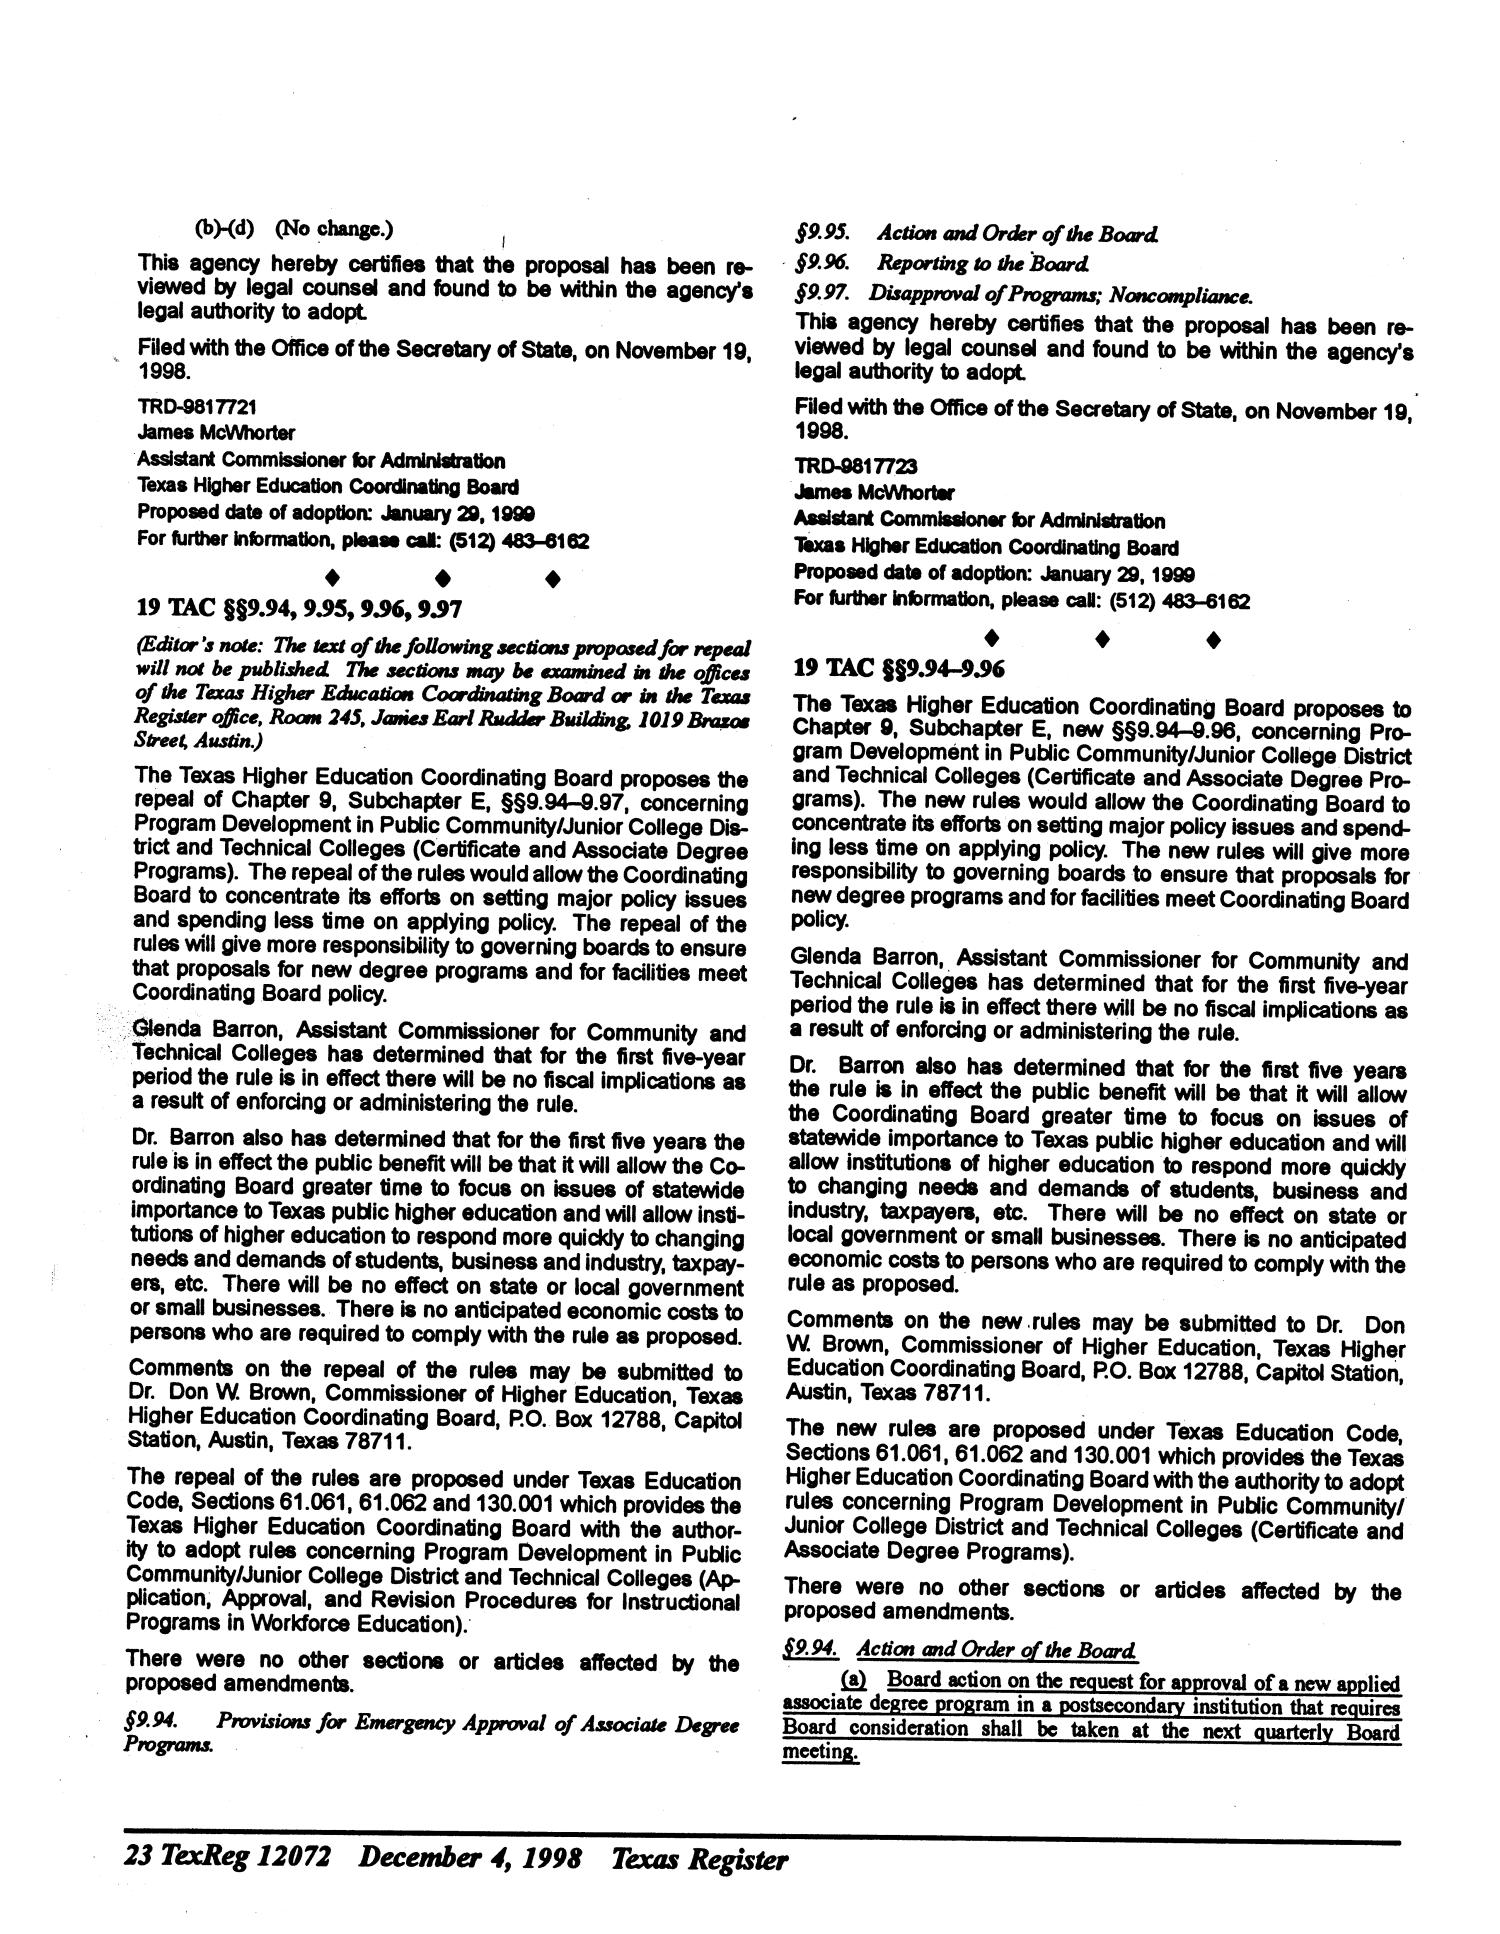 Texas Register, Volume 23, Number 49, Part I, Pages 12009-12154, December 4, 1998
                                                
                                                    12072
                                                